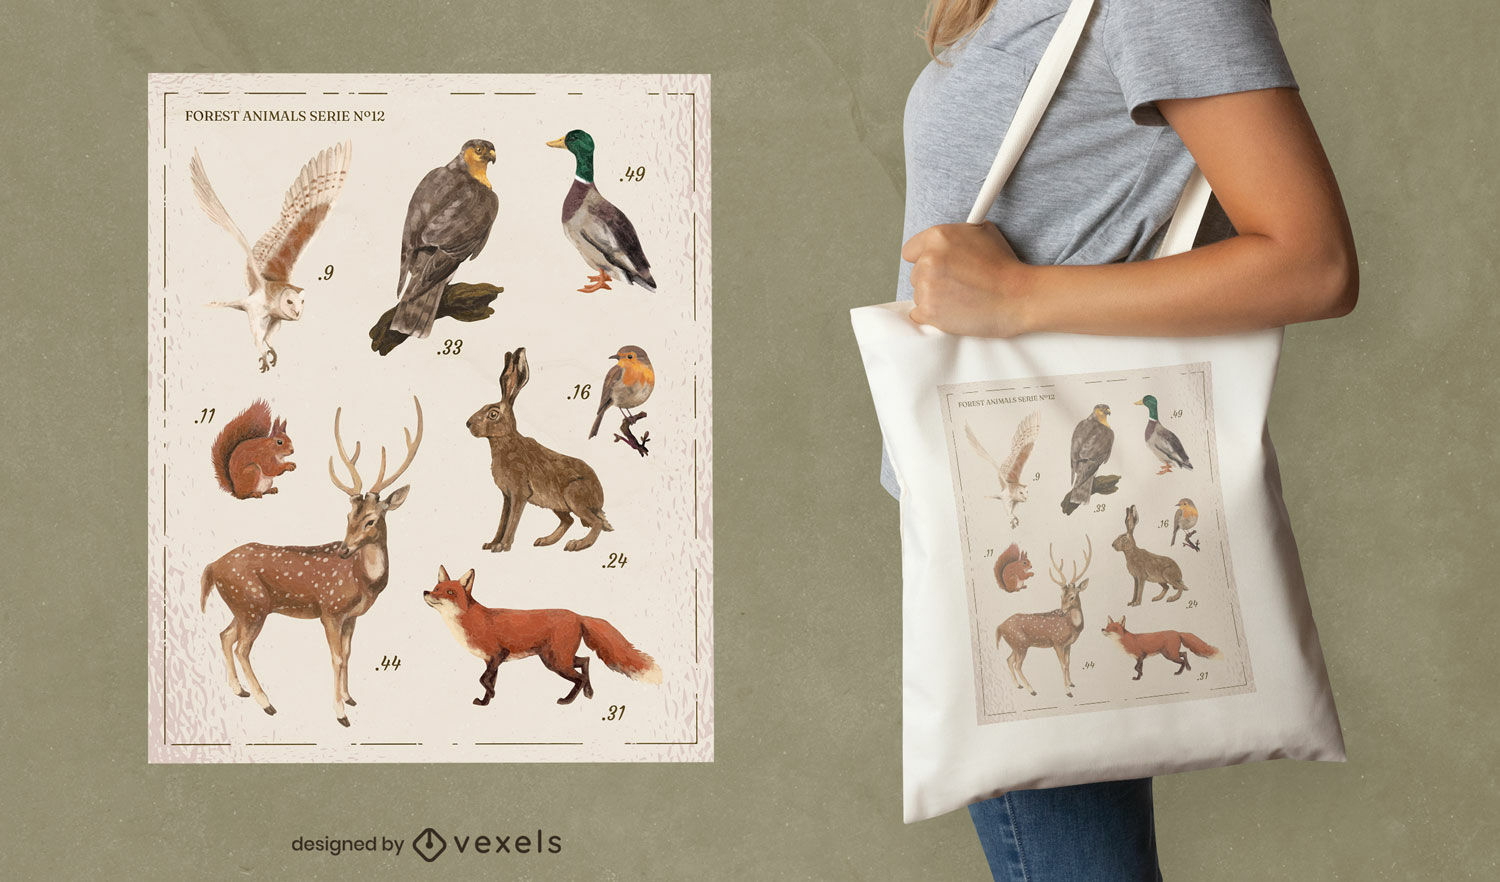 Design der Einkaufstasche aus dem Katalog der Waldtiere